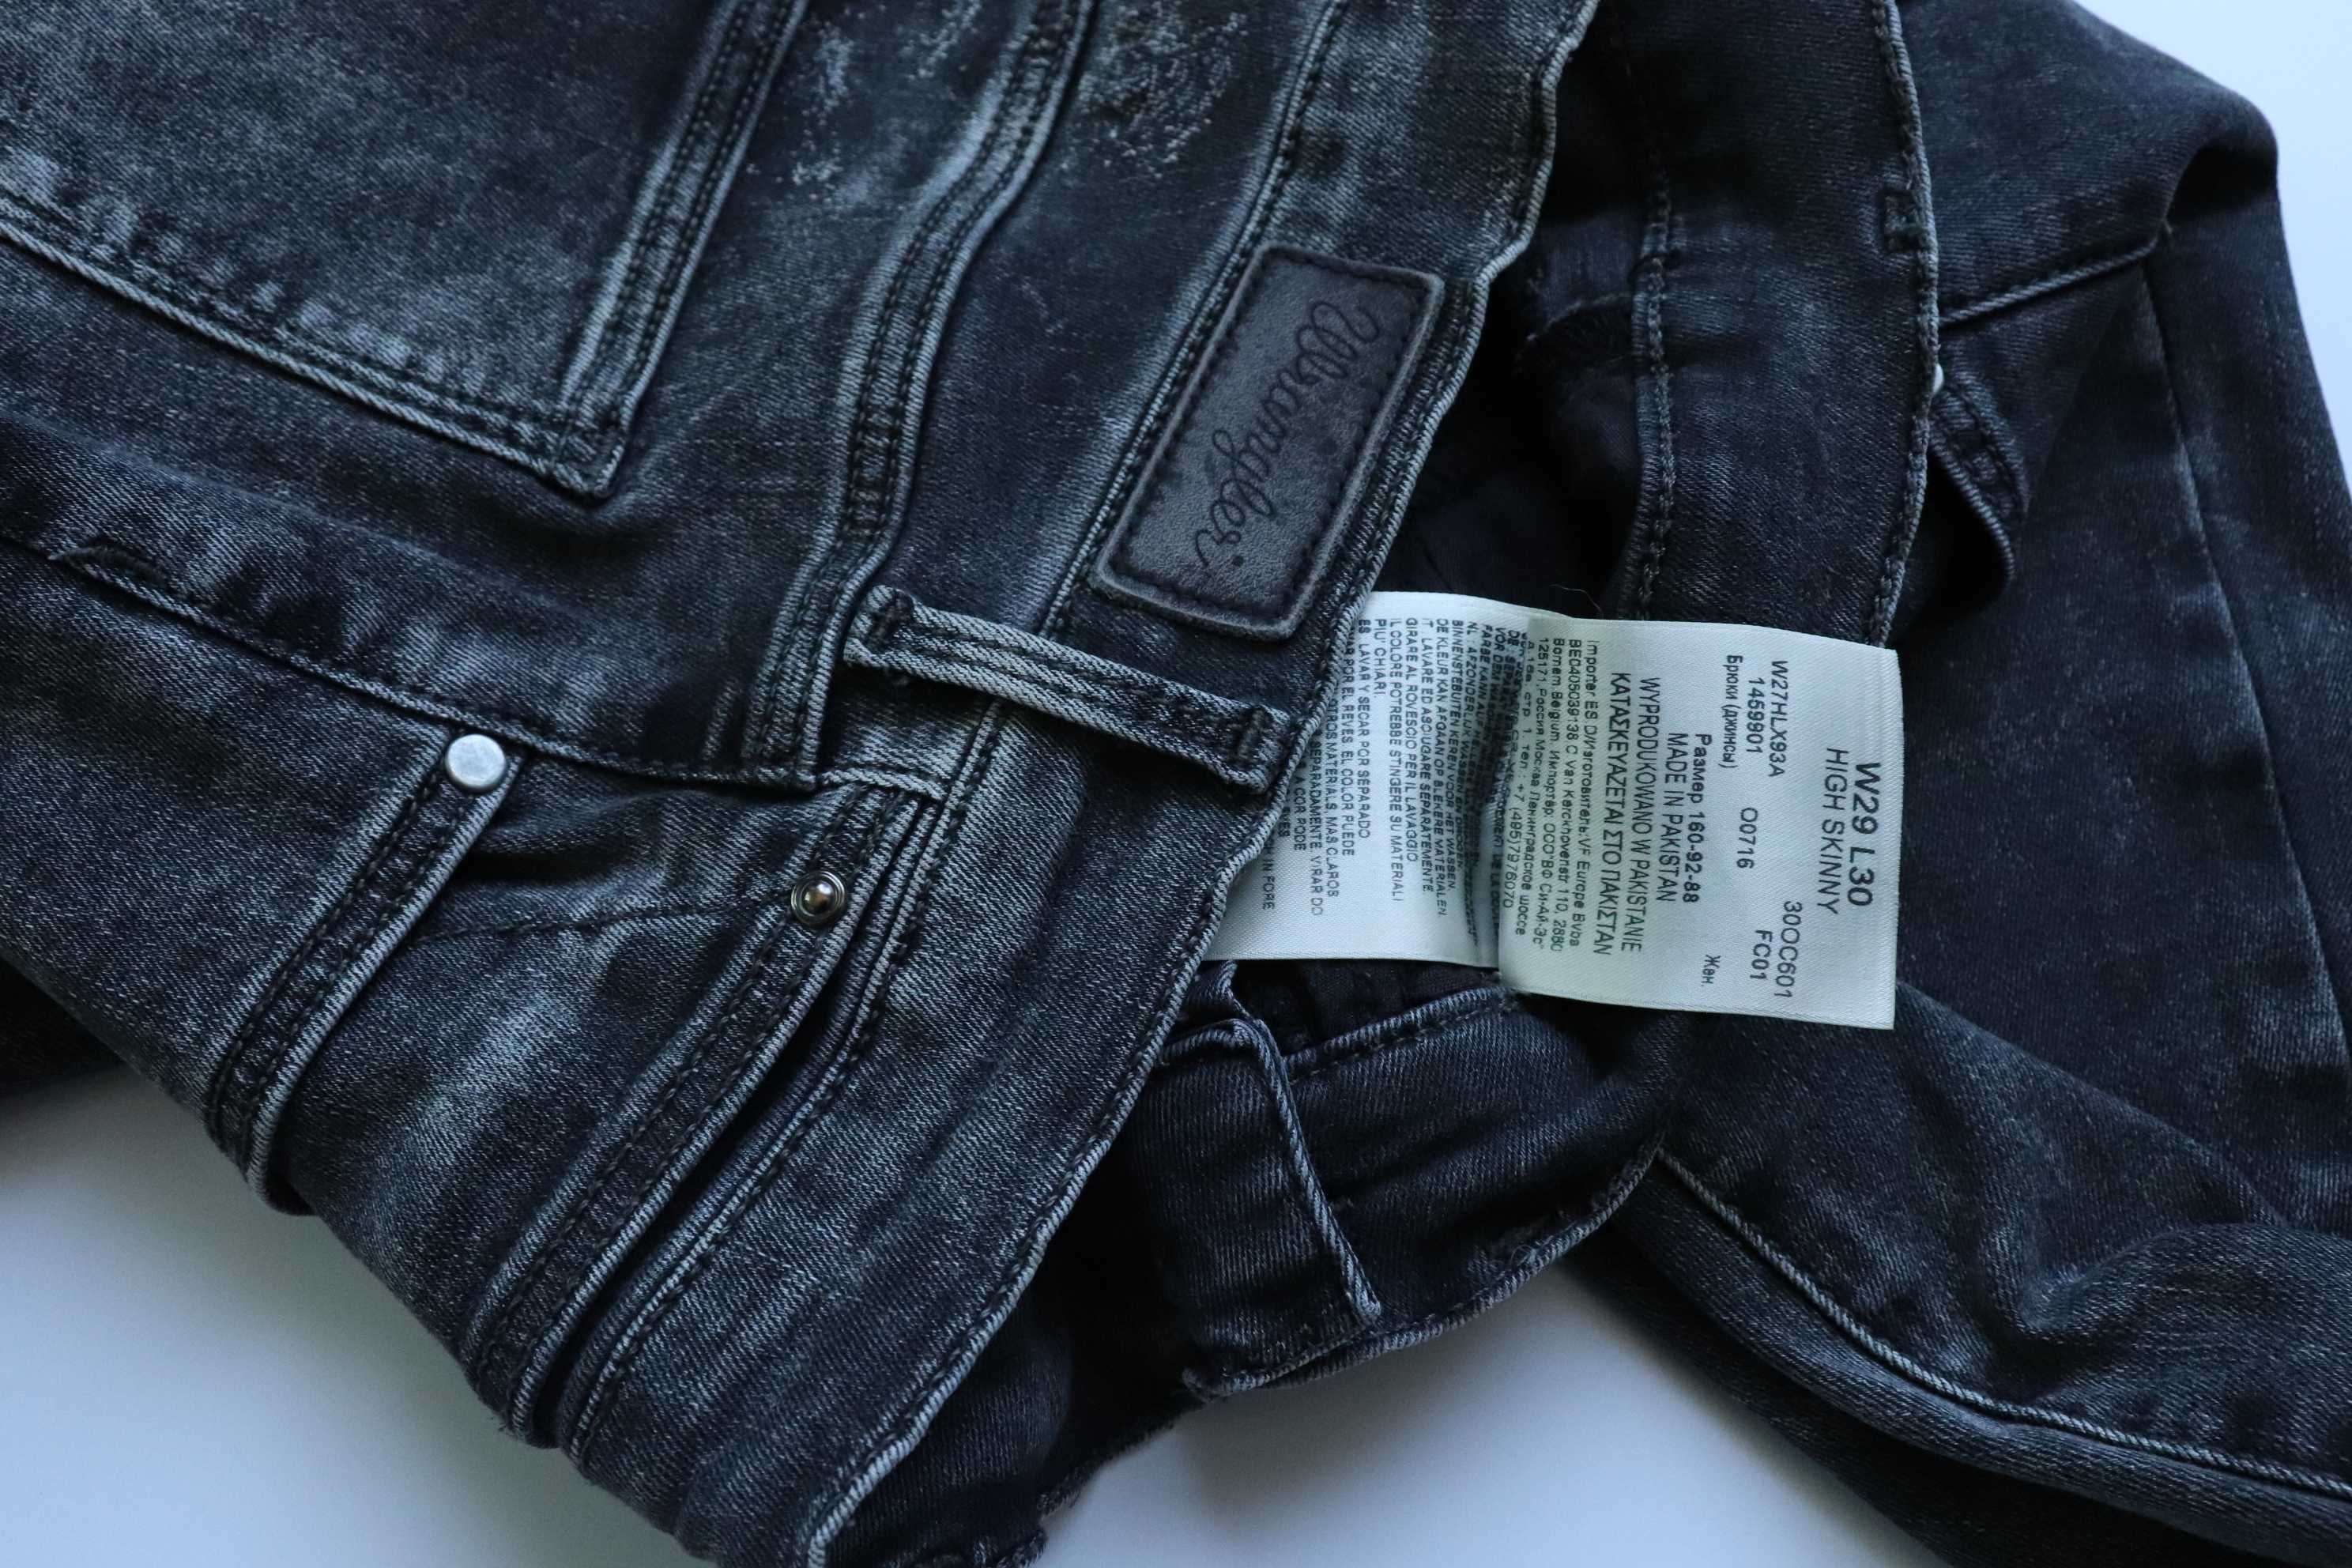 WRANGLER SKINNY W29 L30 damskie spodnie jeansy jak nowe